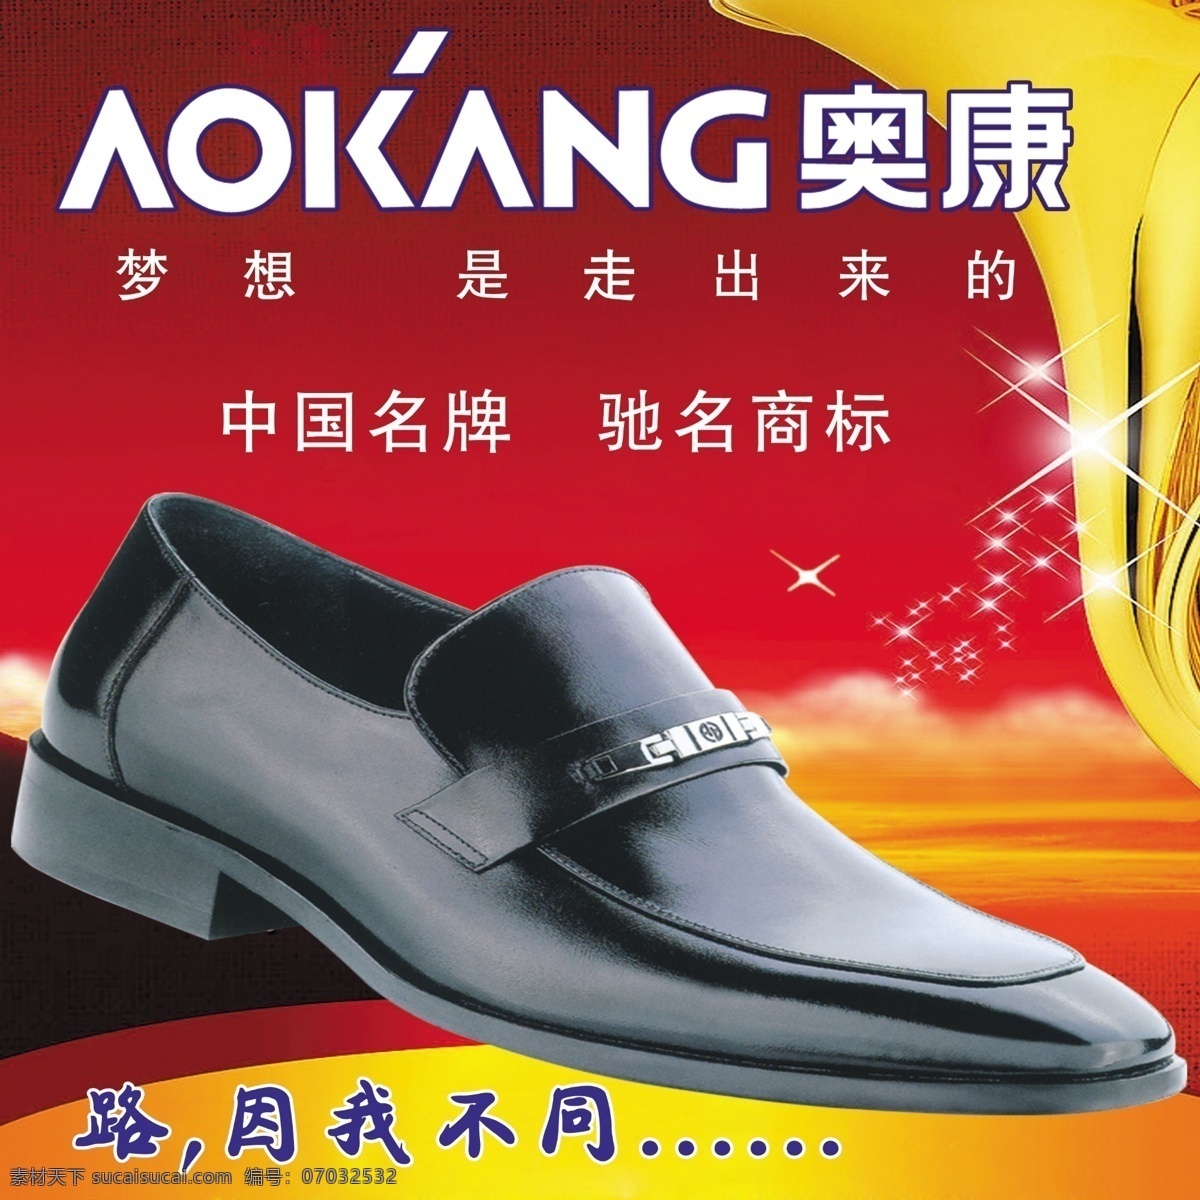 奥康皮鞋 鞋 皮鞋 中国名牌 驰名商标 红背景 星星 梦想 其他模版 广告设计模板 源文件